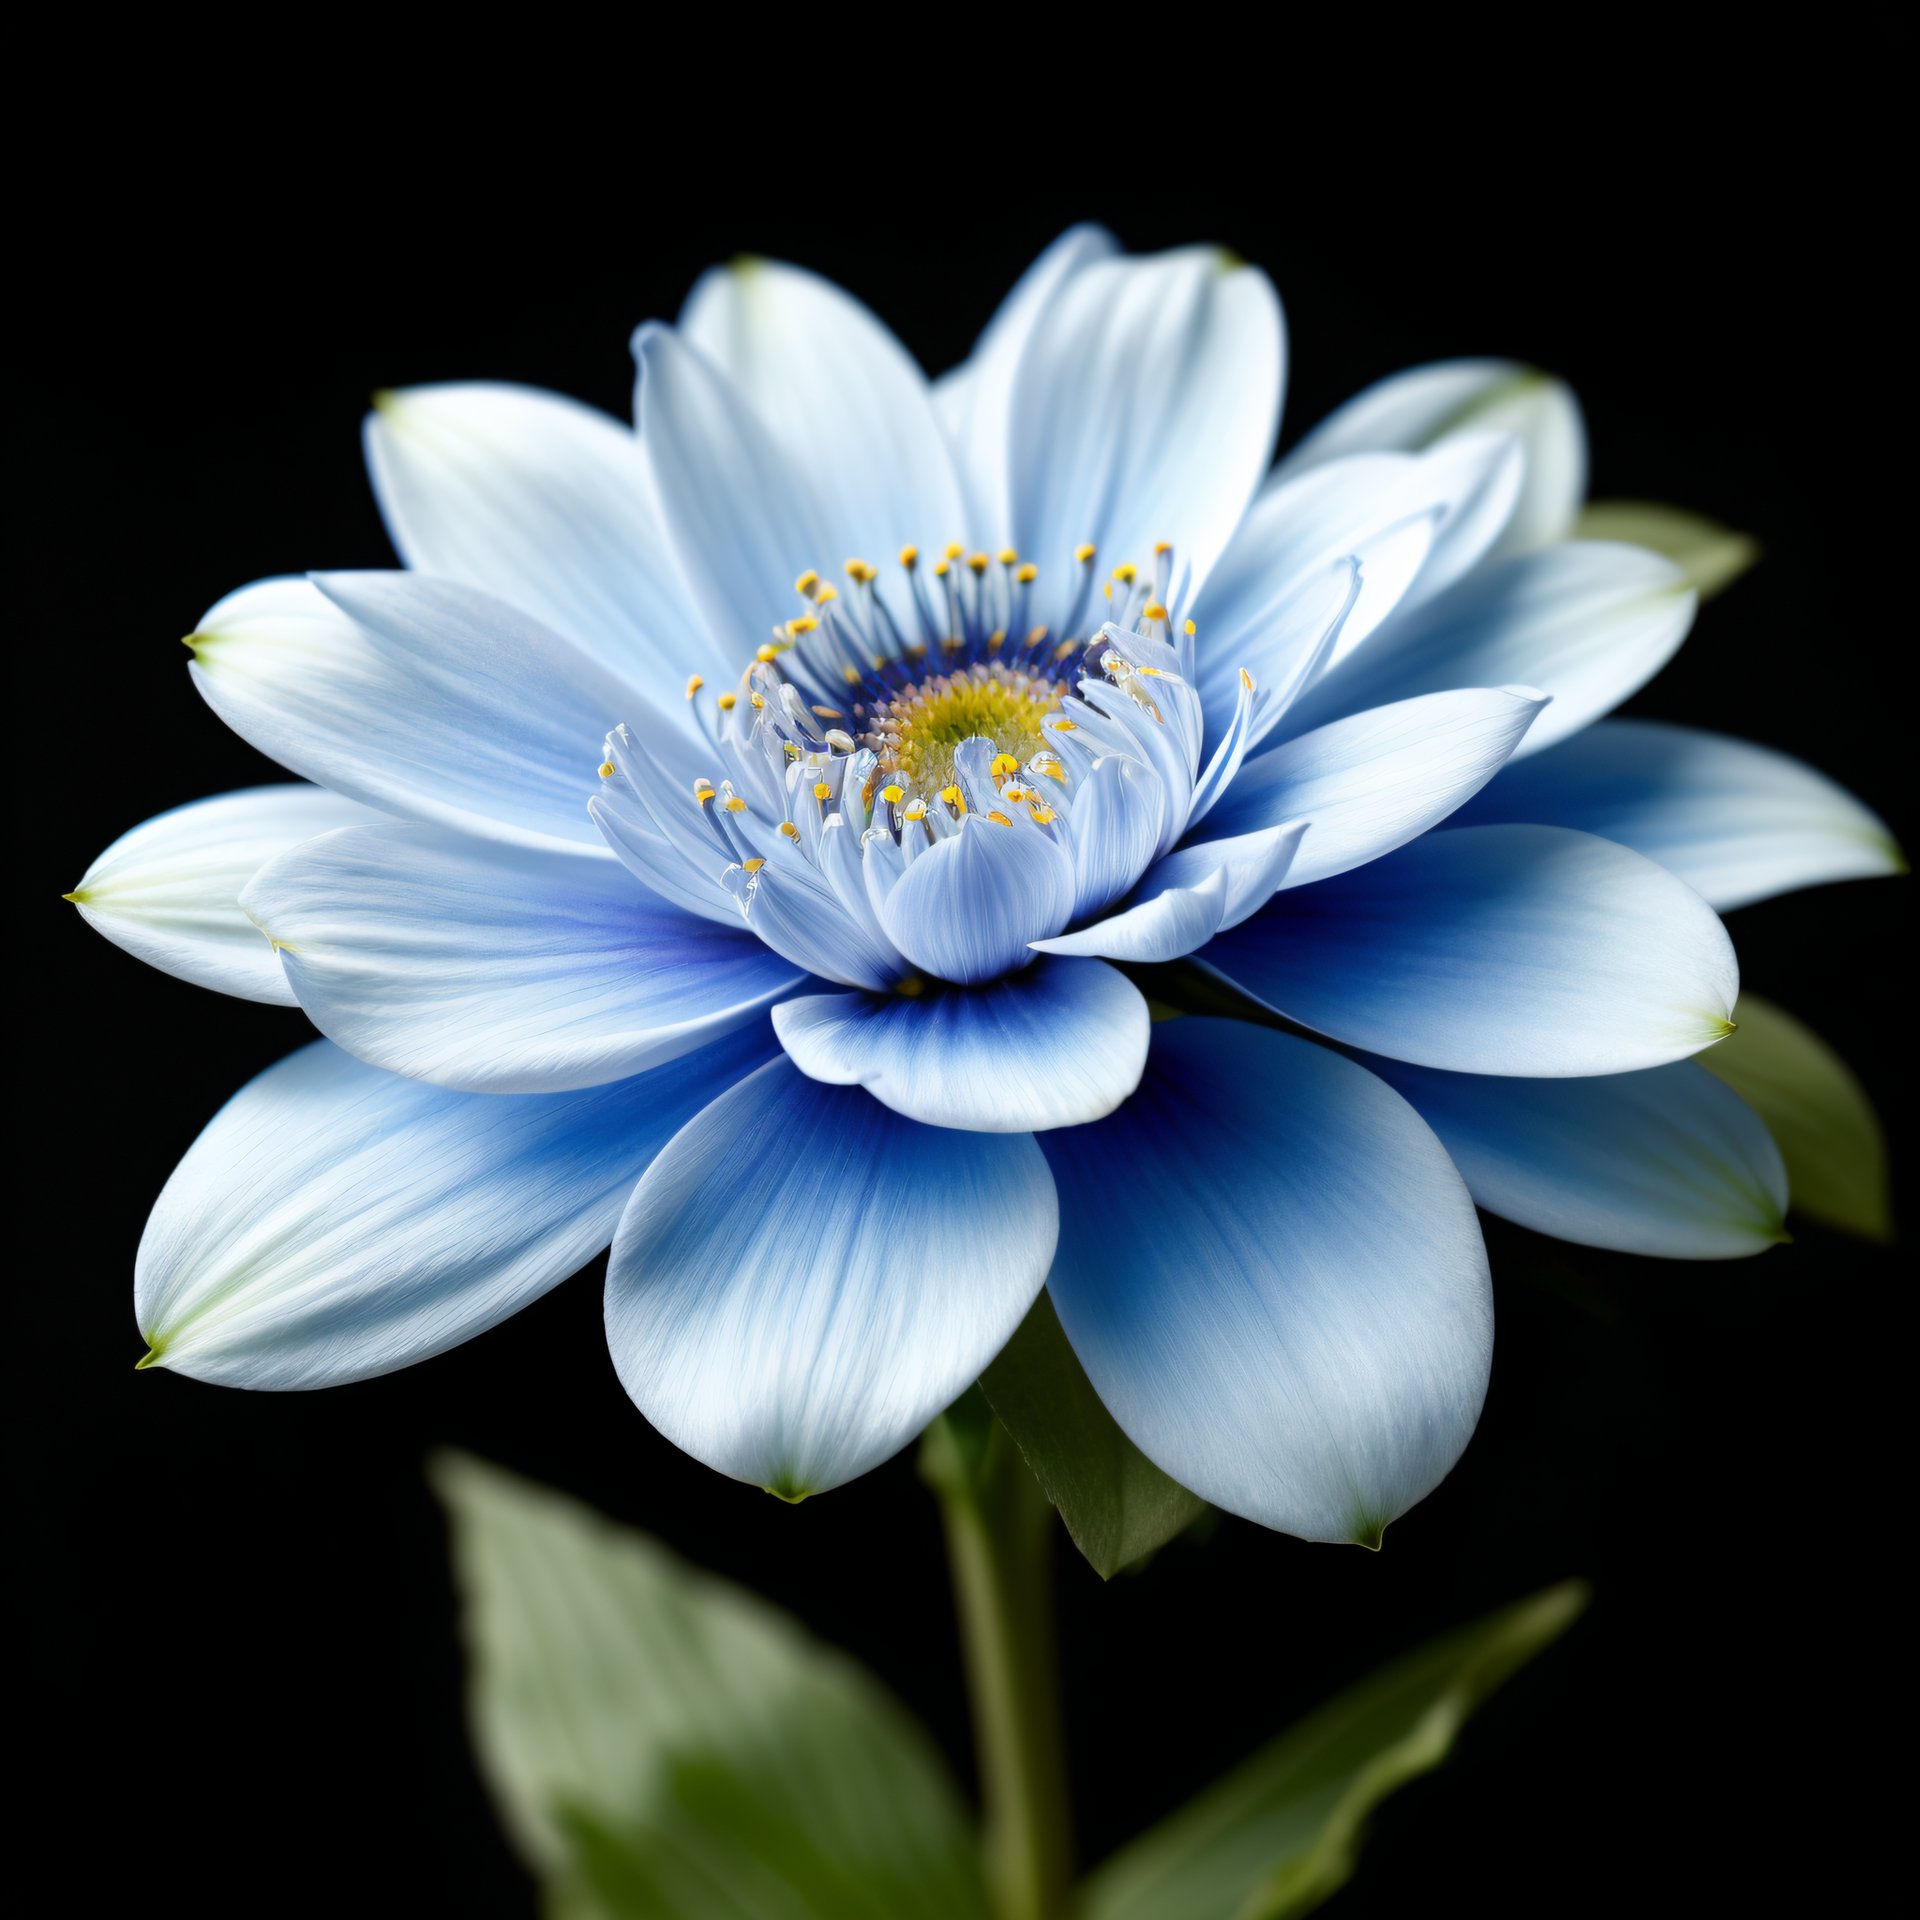 blue flowers bouquet